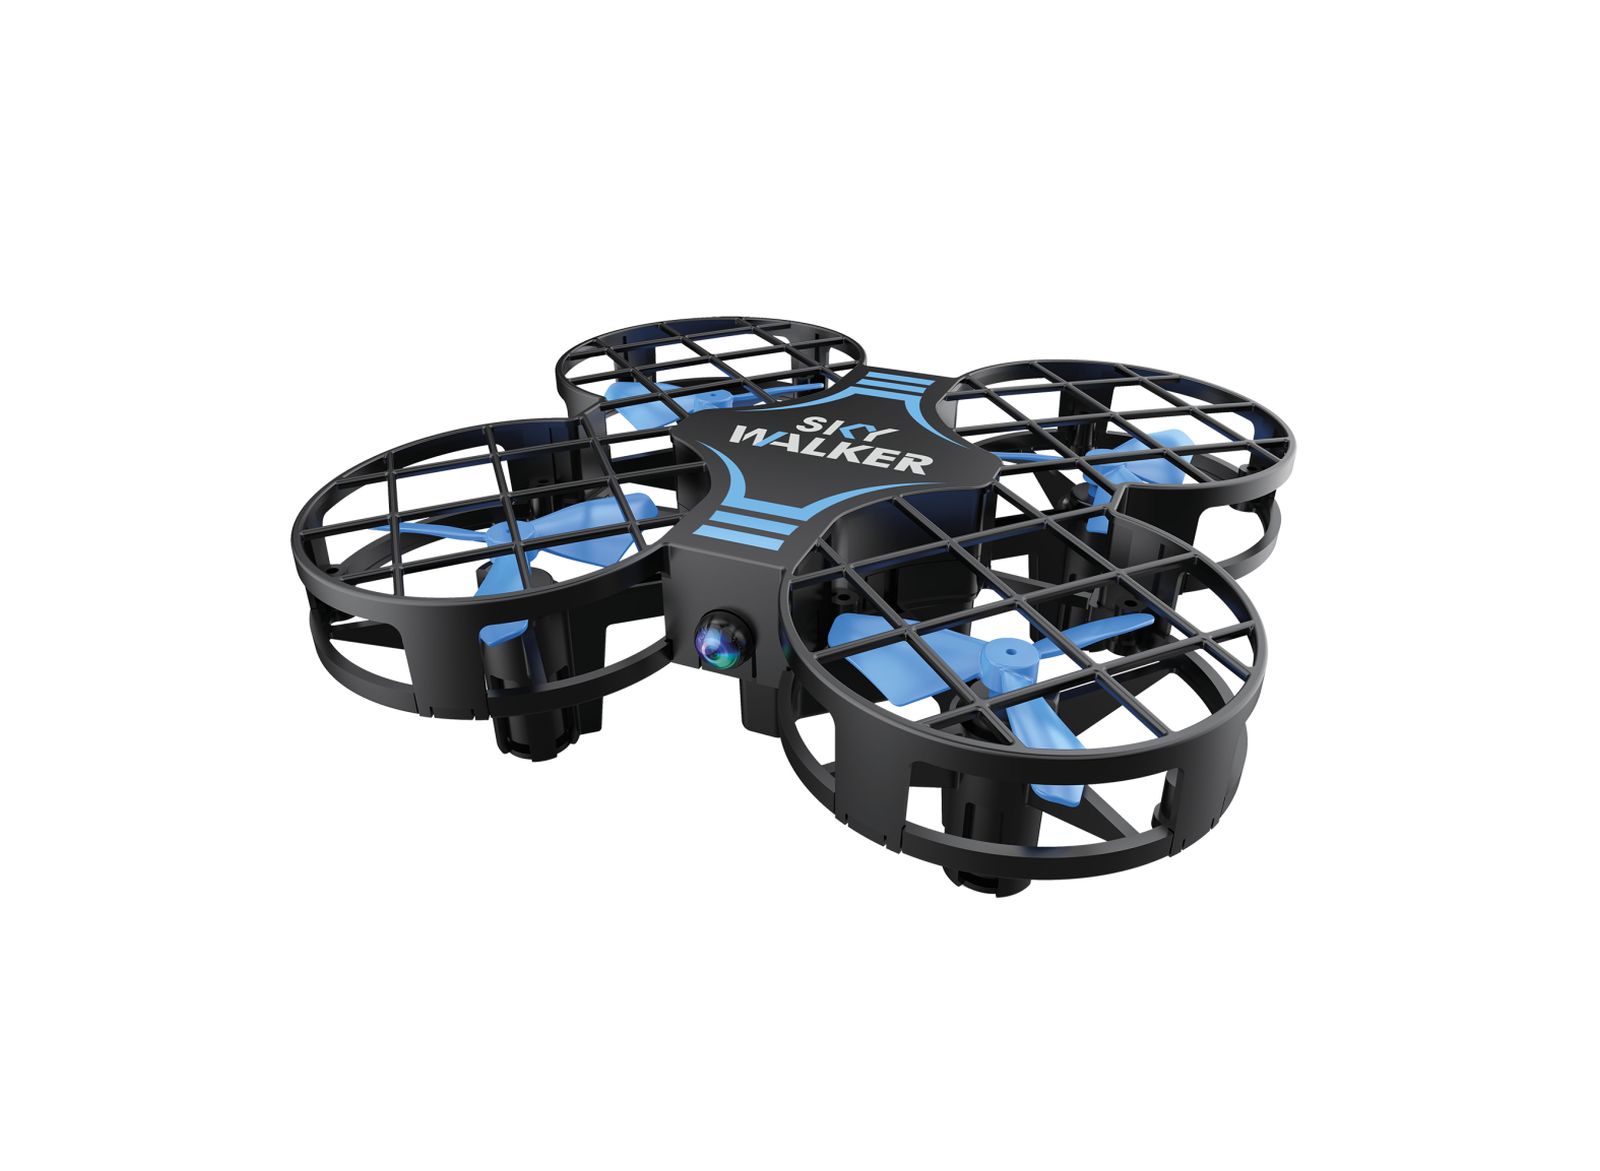 Drone r/c sky walker - MOTOR & CO.